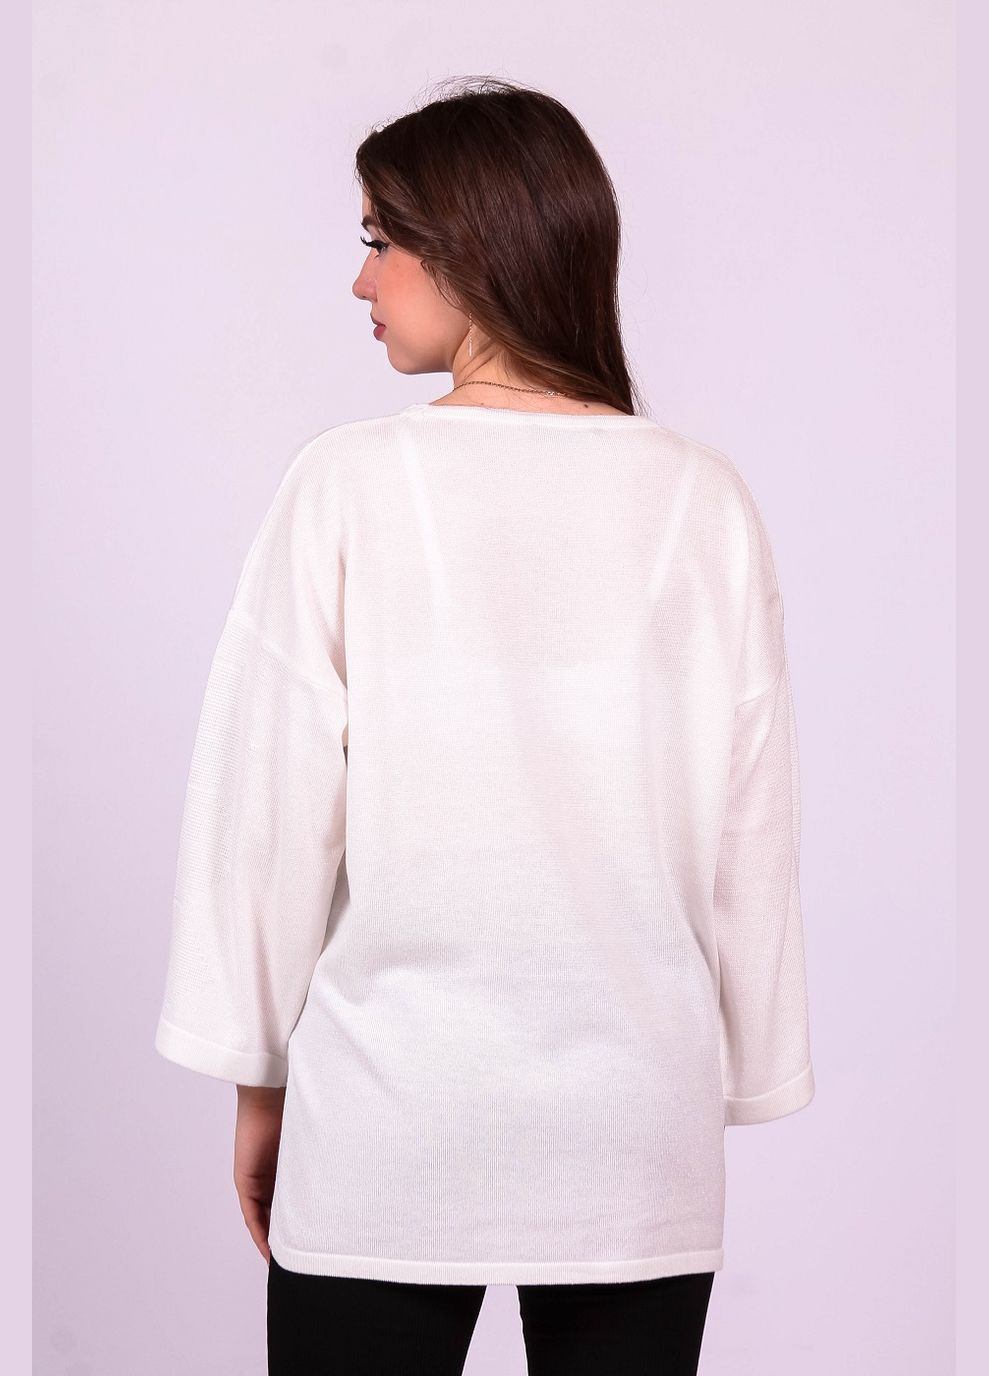 Молочный свитер нарядный женский 92077 трикотаж люрекс молочный Актуаль